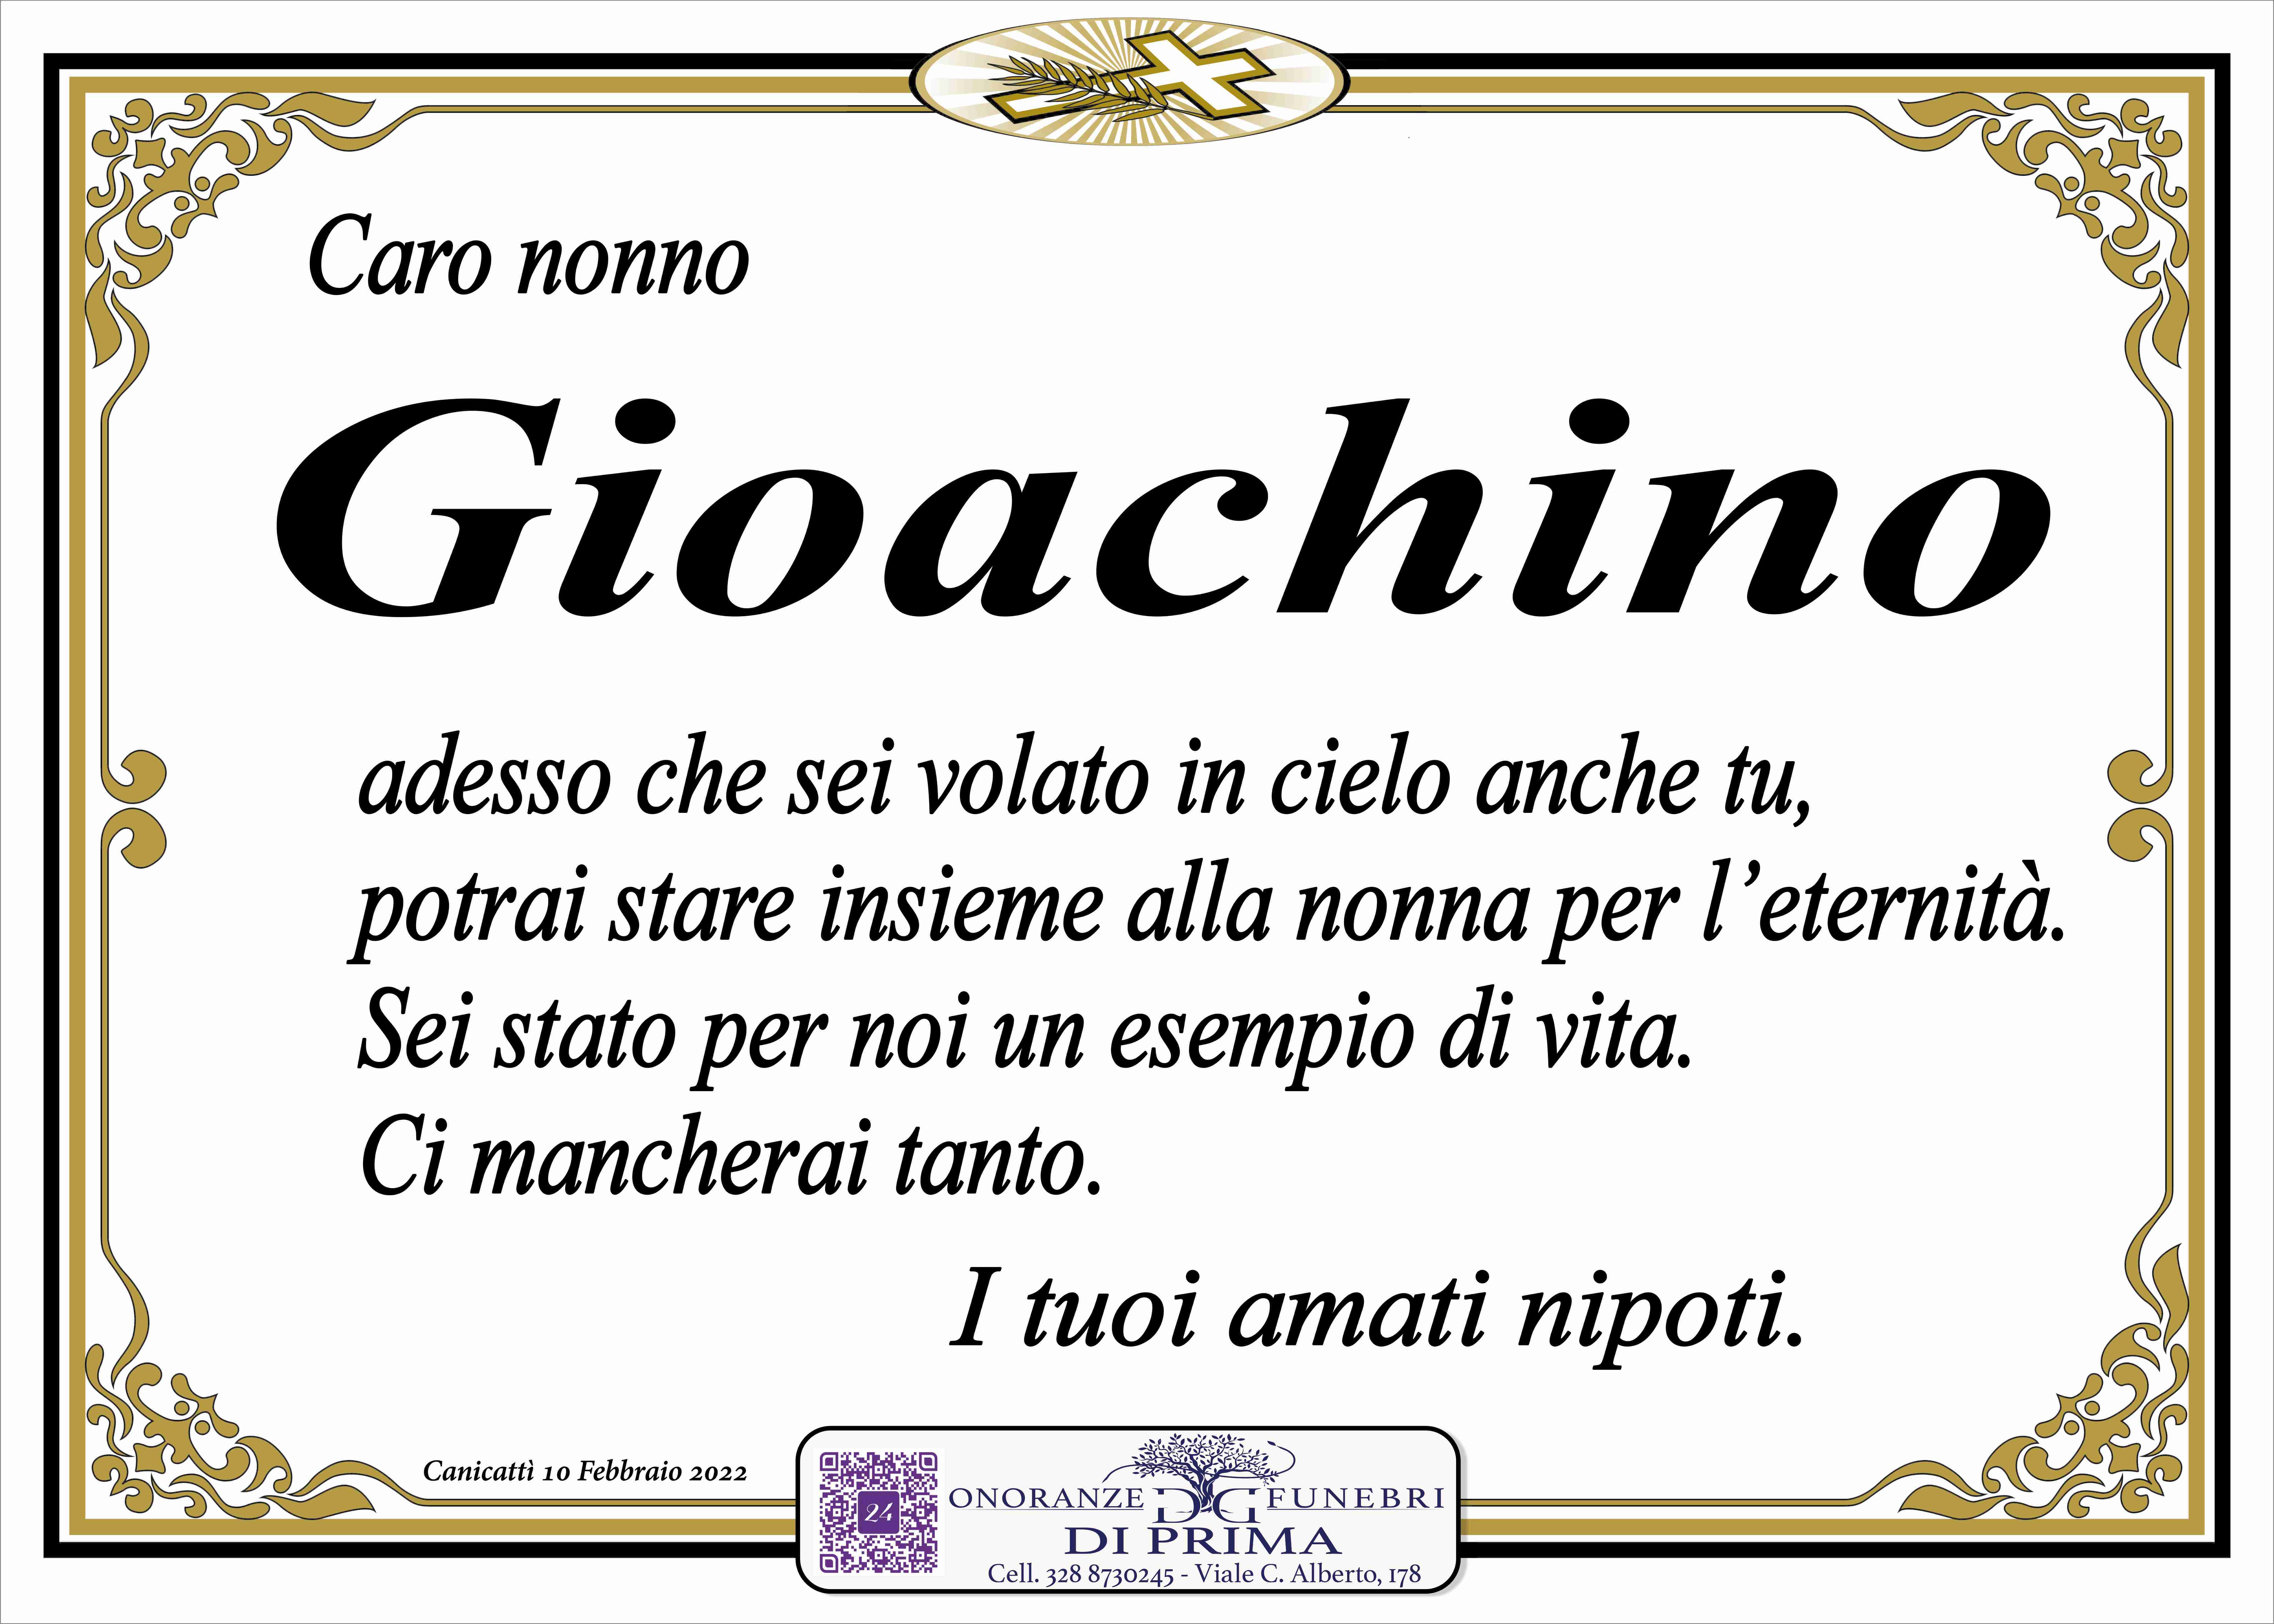 Gioachino Giancone